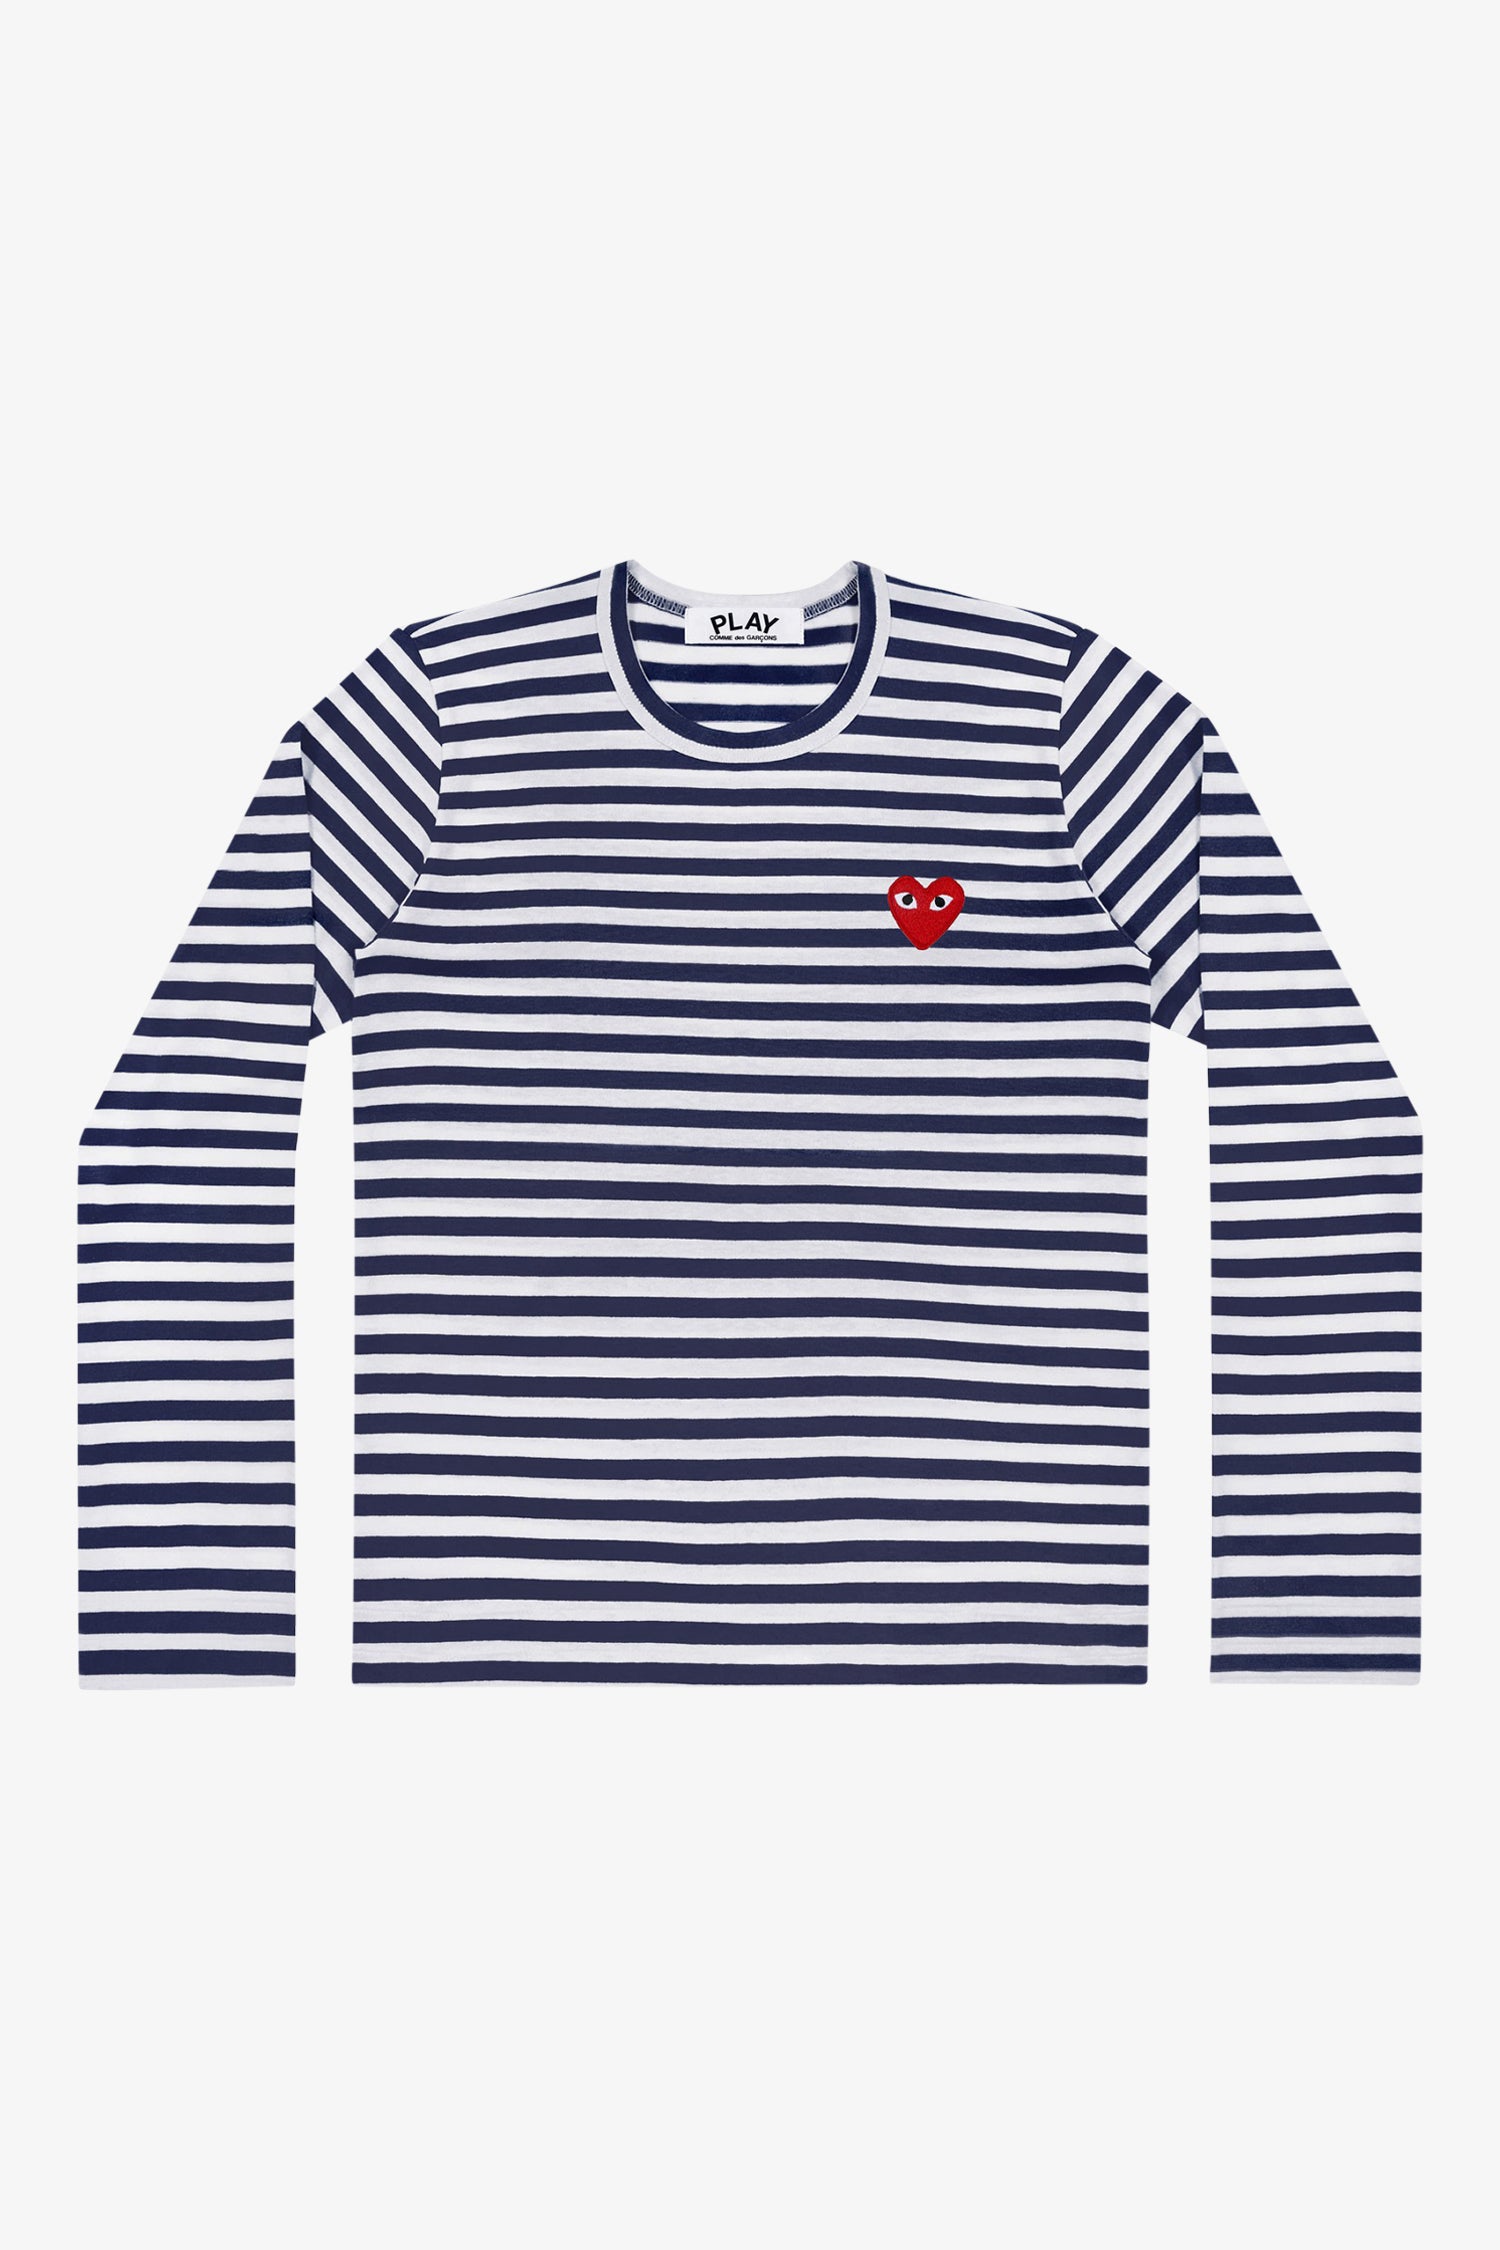 Selectshop FRAME - COMME DES GARCONS PLAY Striped T-Shirt T-Shirts Dubai